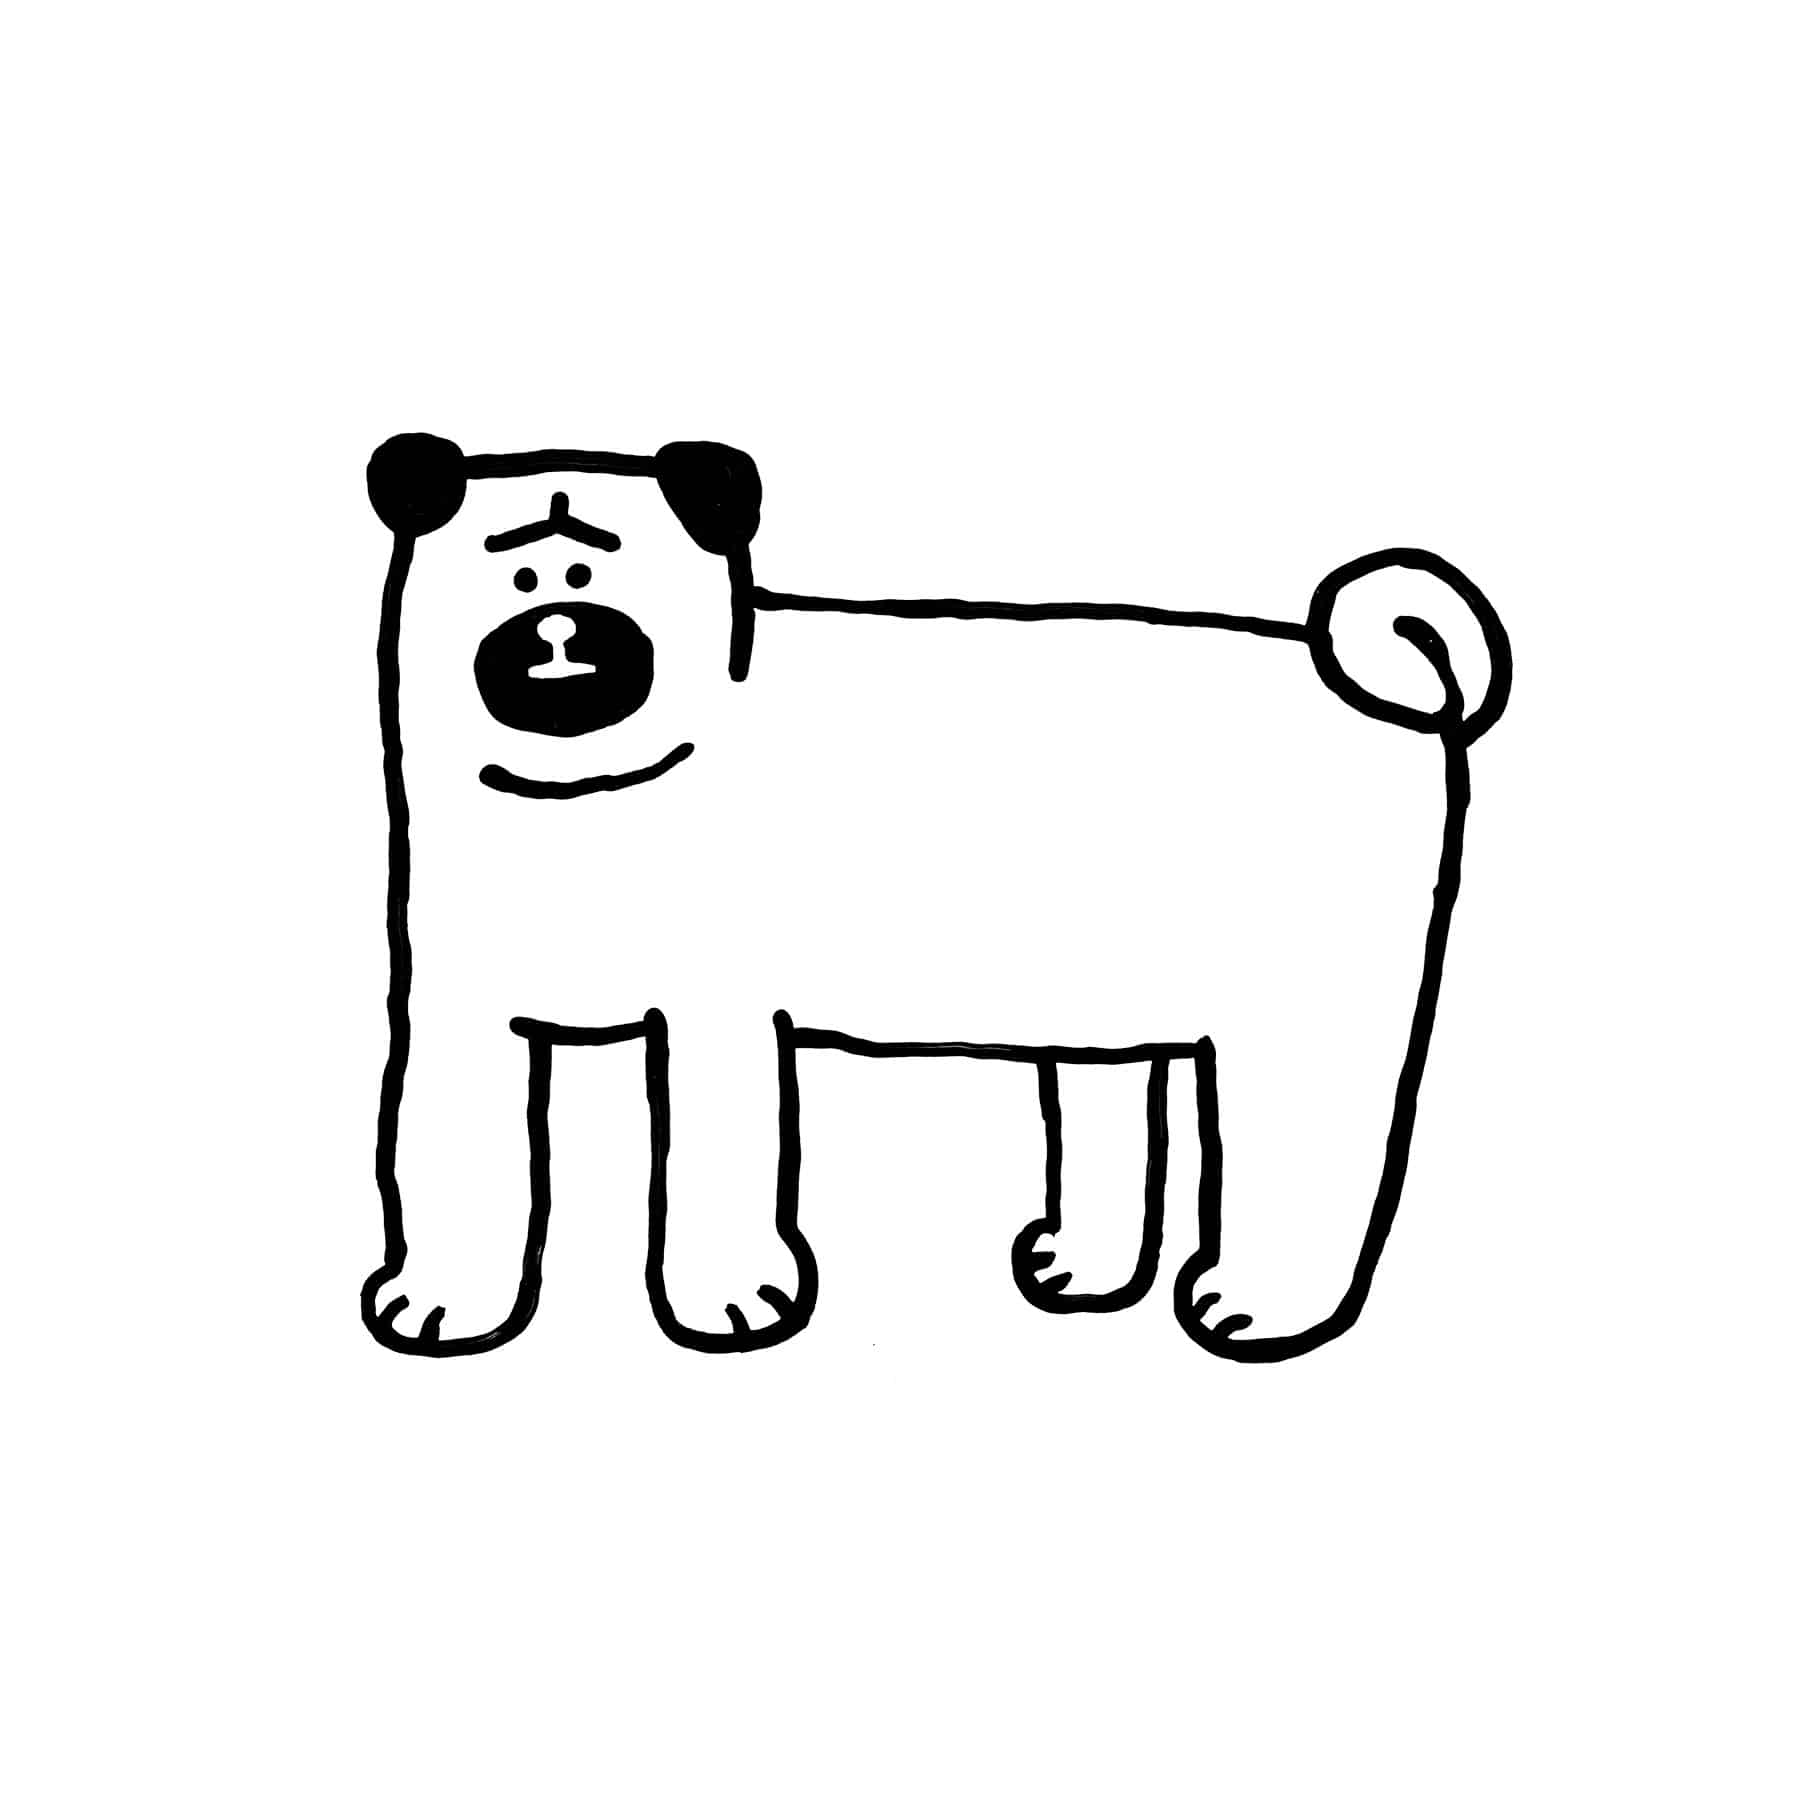 A DOG